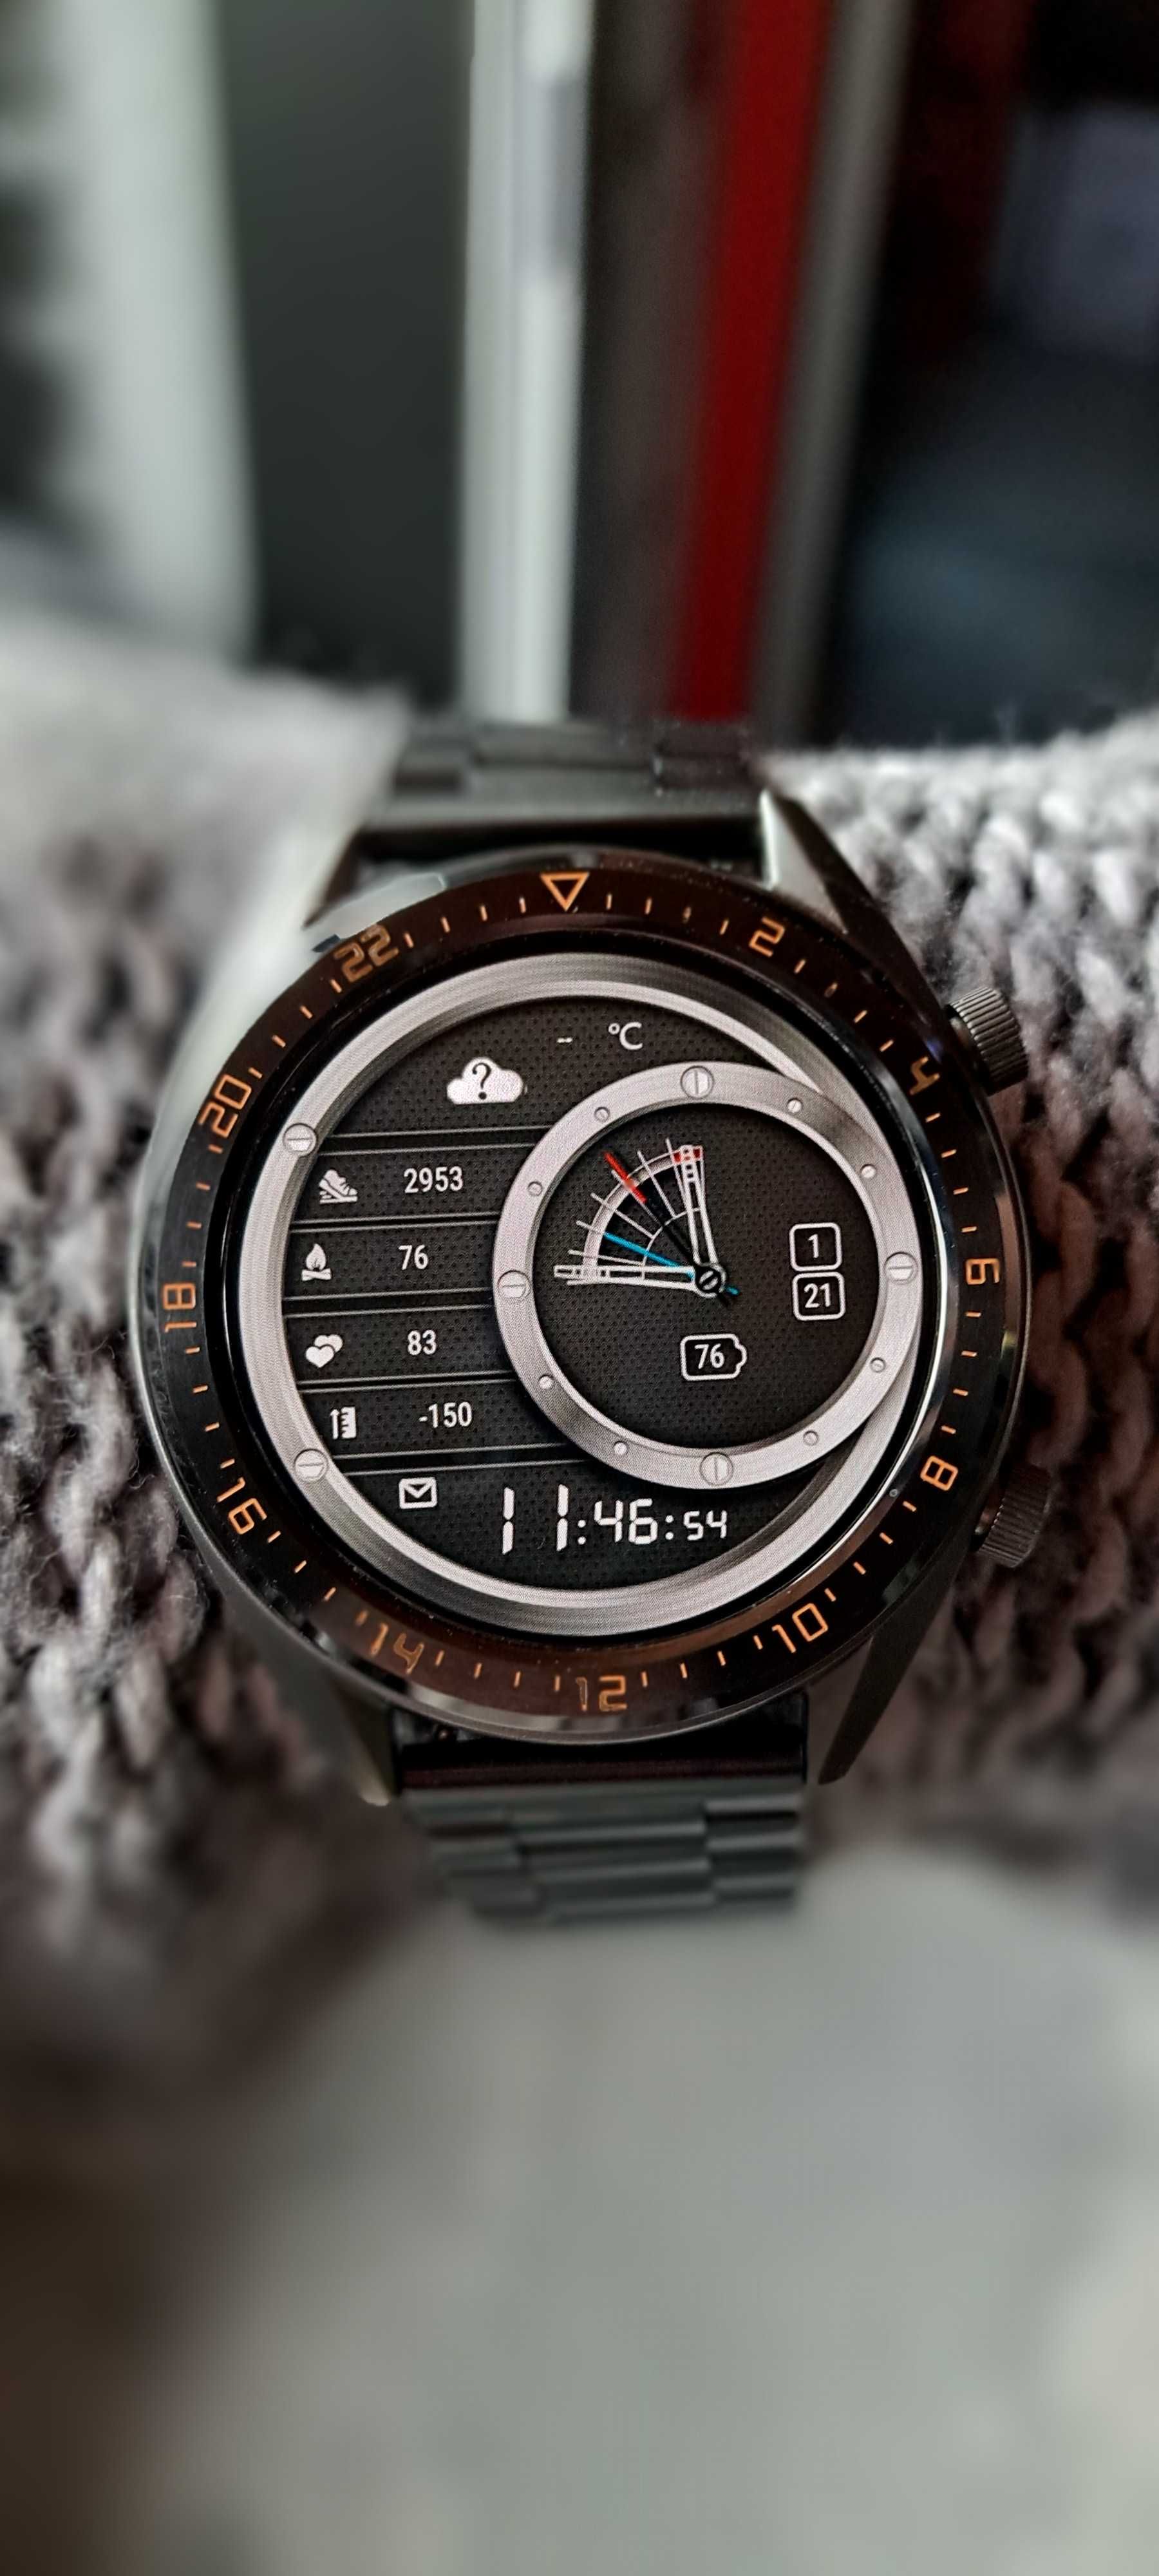 Smartwatch huawei gt